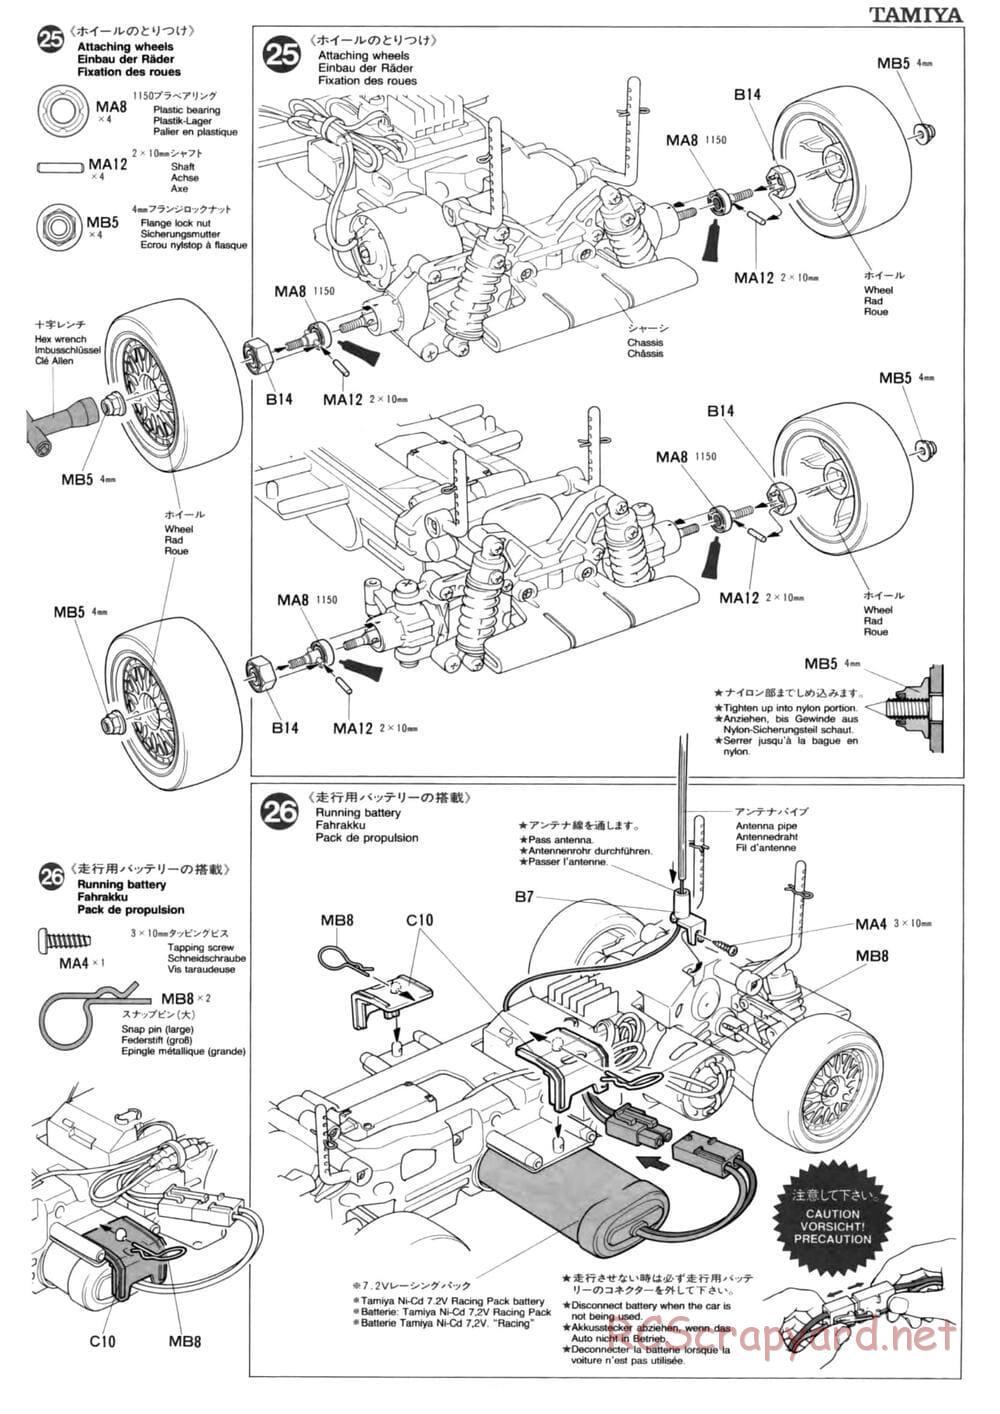 Tamiya - TL-01 Chassis - Manual - Page 15